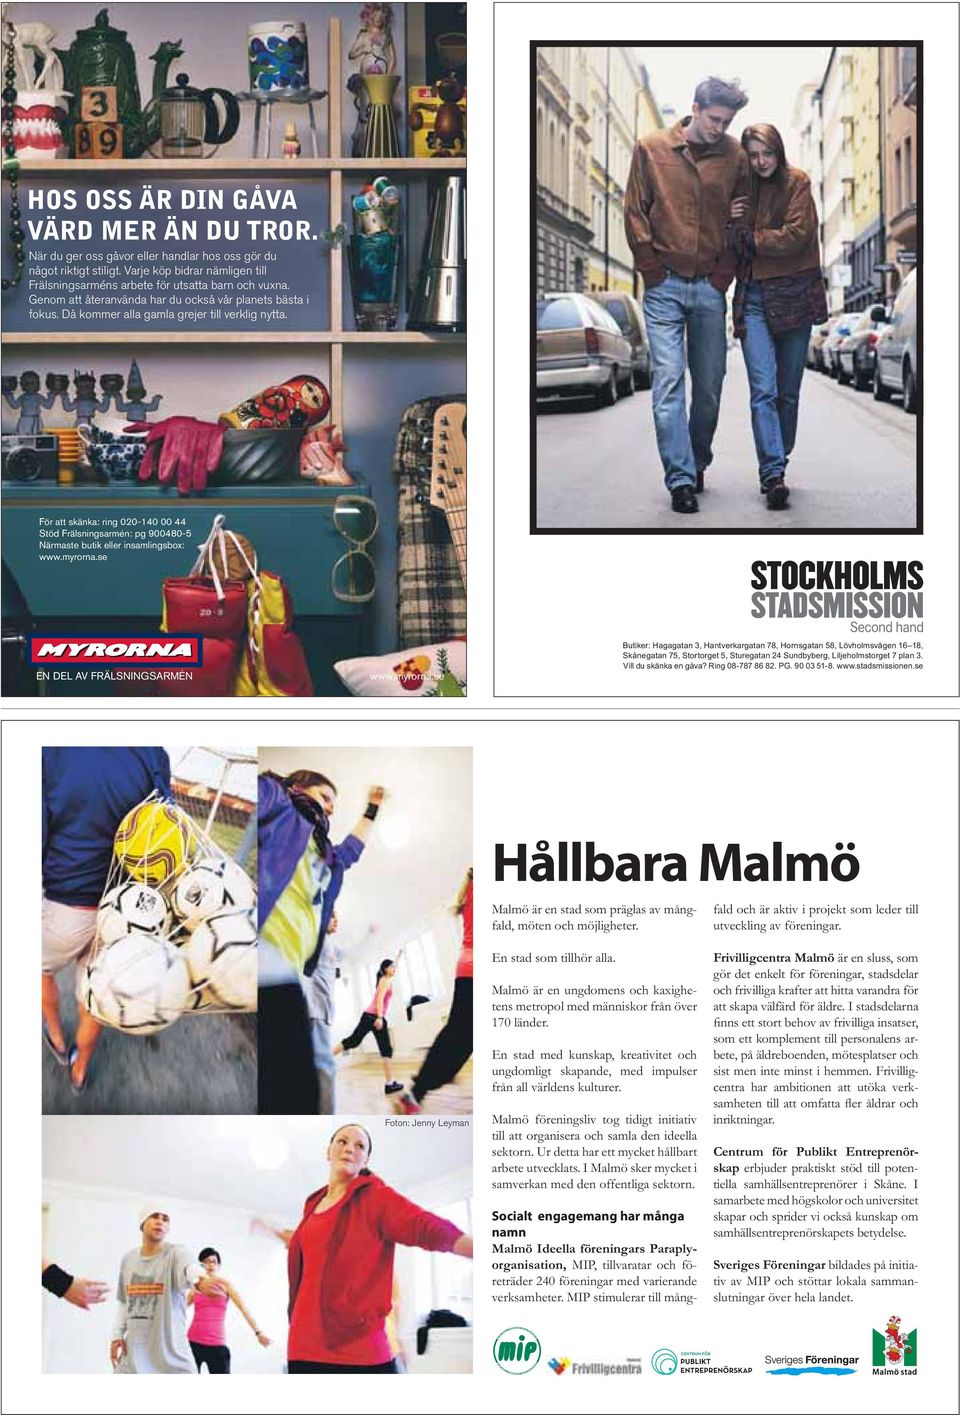 En stad som tillhör alla. Malmö är en ungdomens och kaxighetens metropol med människor från över 170 länder.